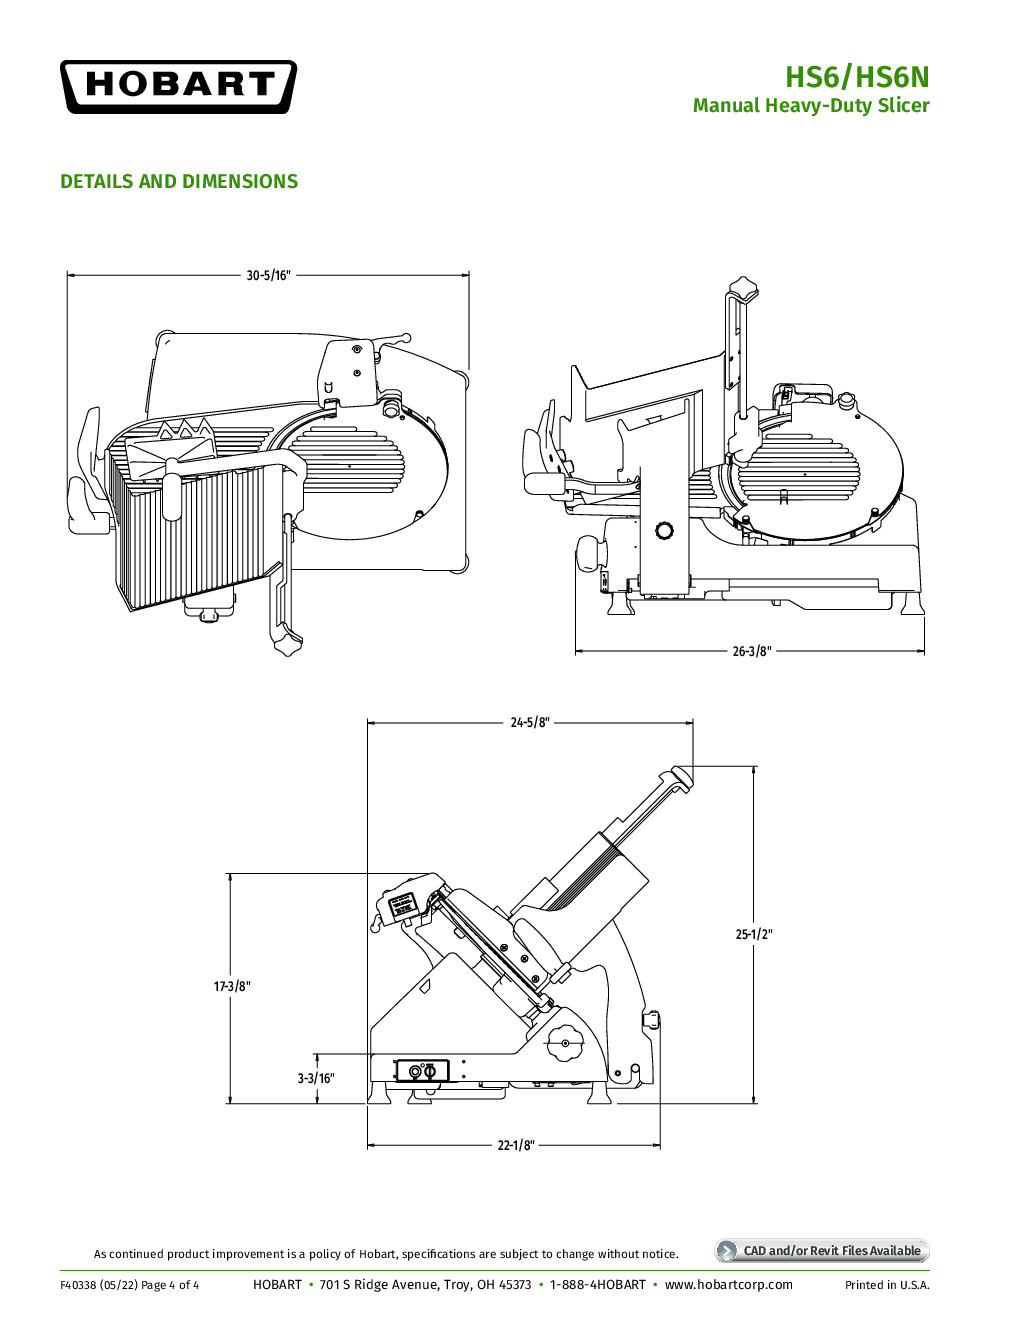 Hobart HS6N-HV50C High Voltage Manual Slicer with 13